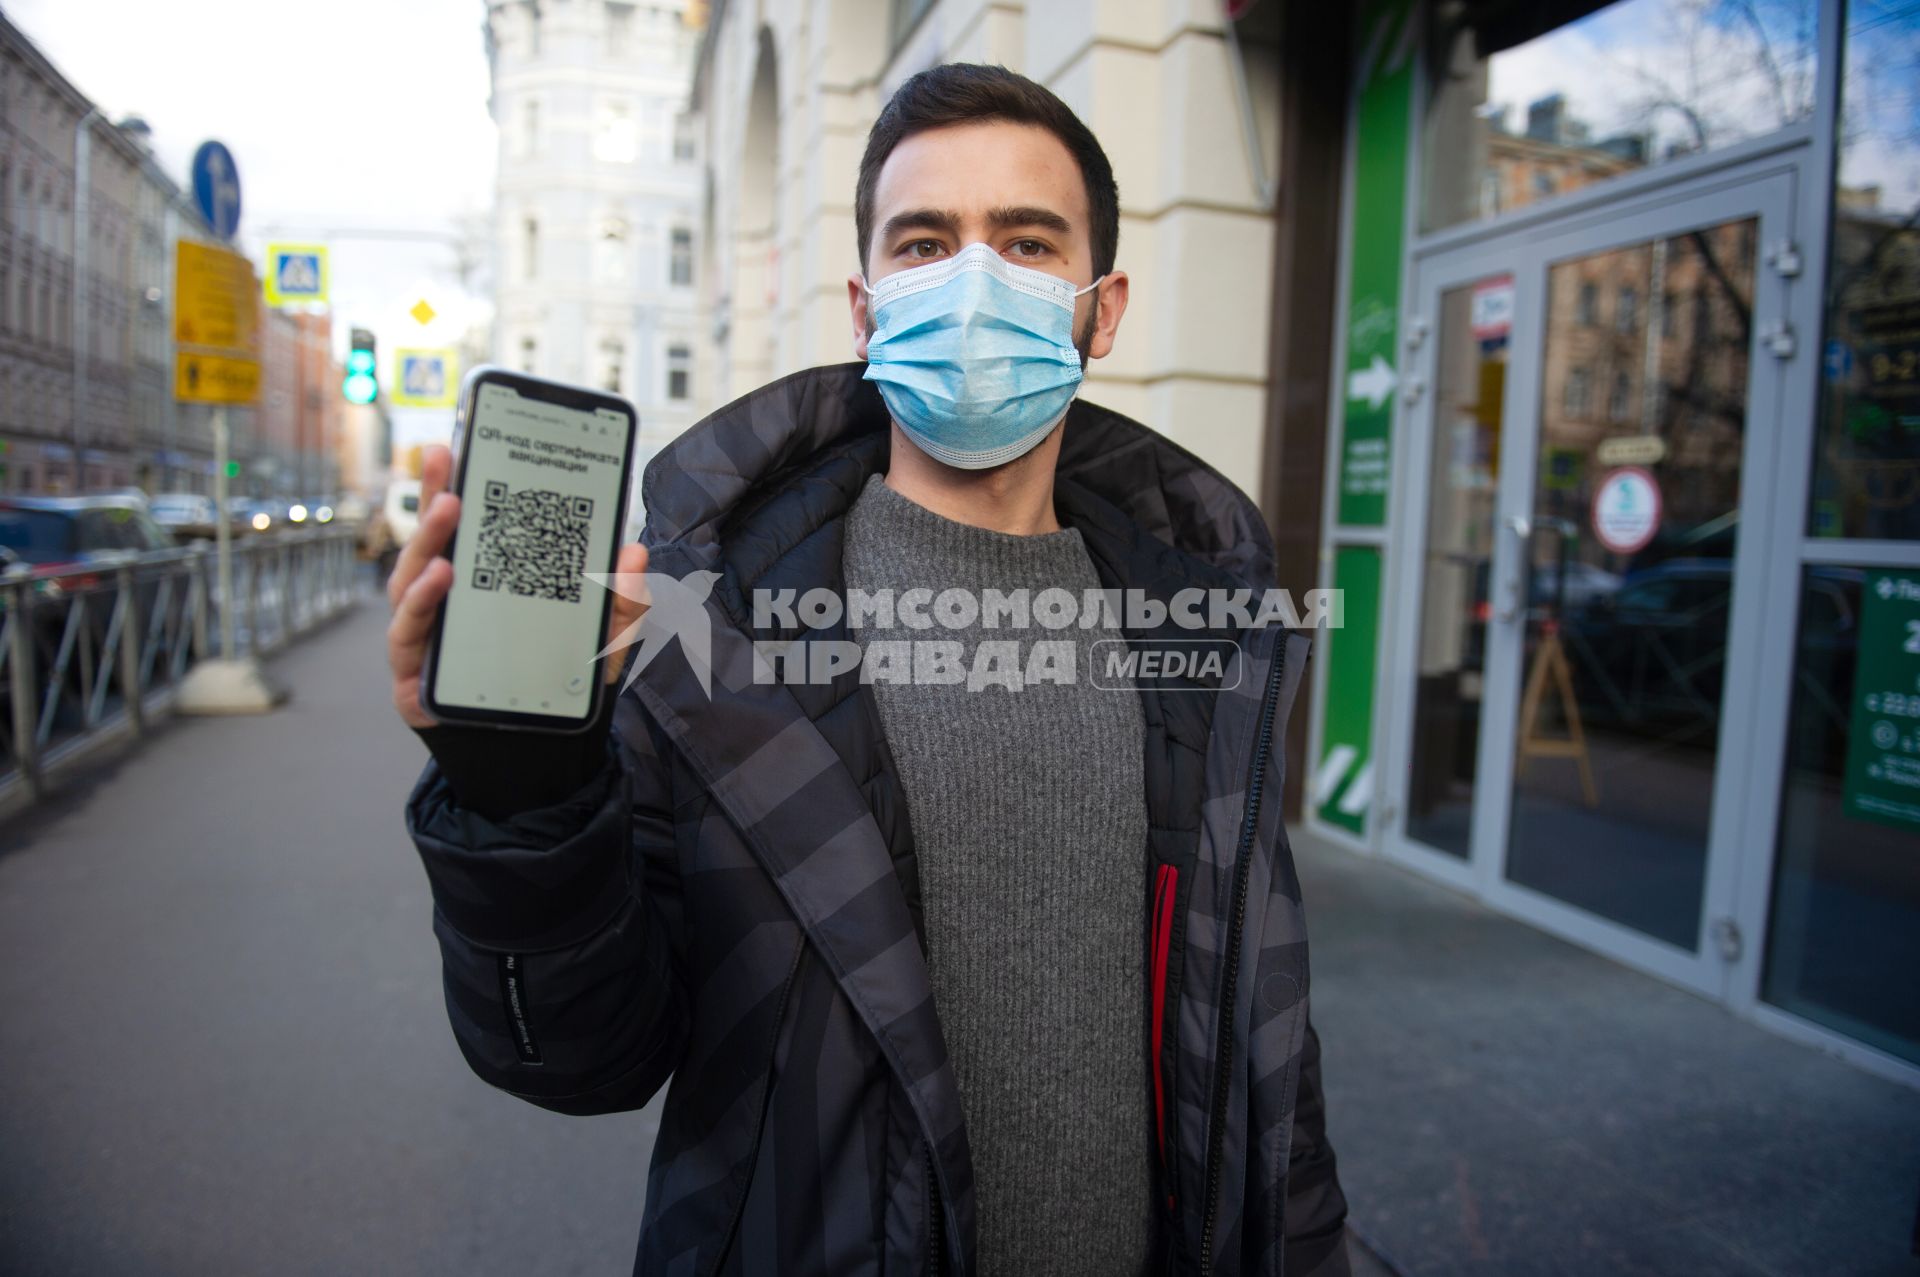 Санкт-Петербург. Юноша в маске и мобильным телефоном, на экране которого отображен QR-код, заходит в торговый центр.